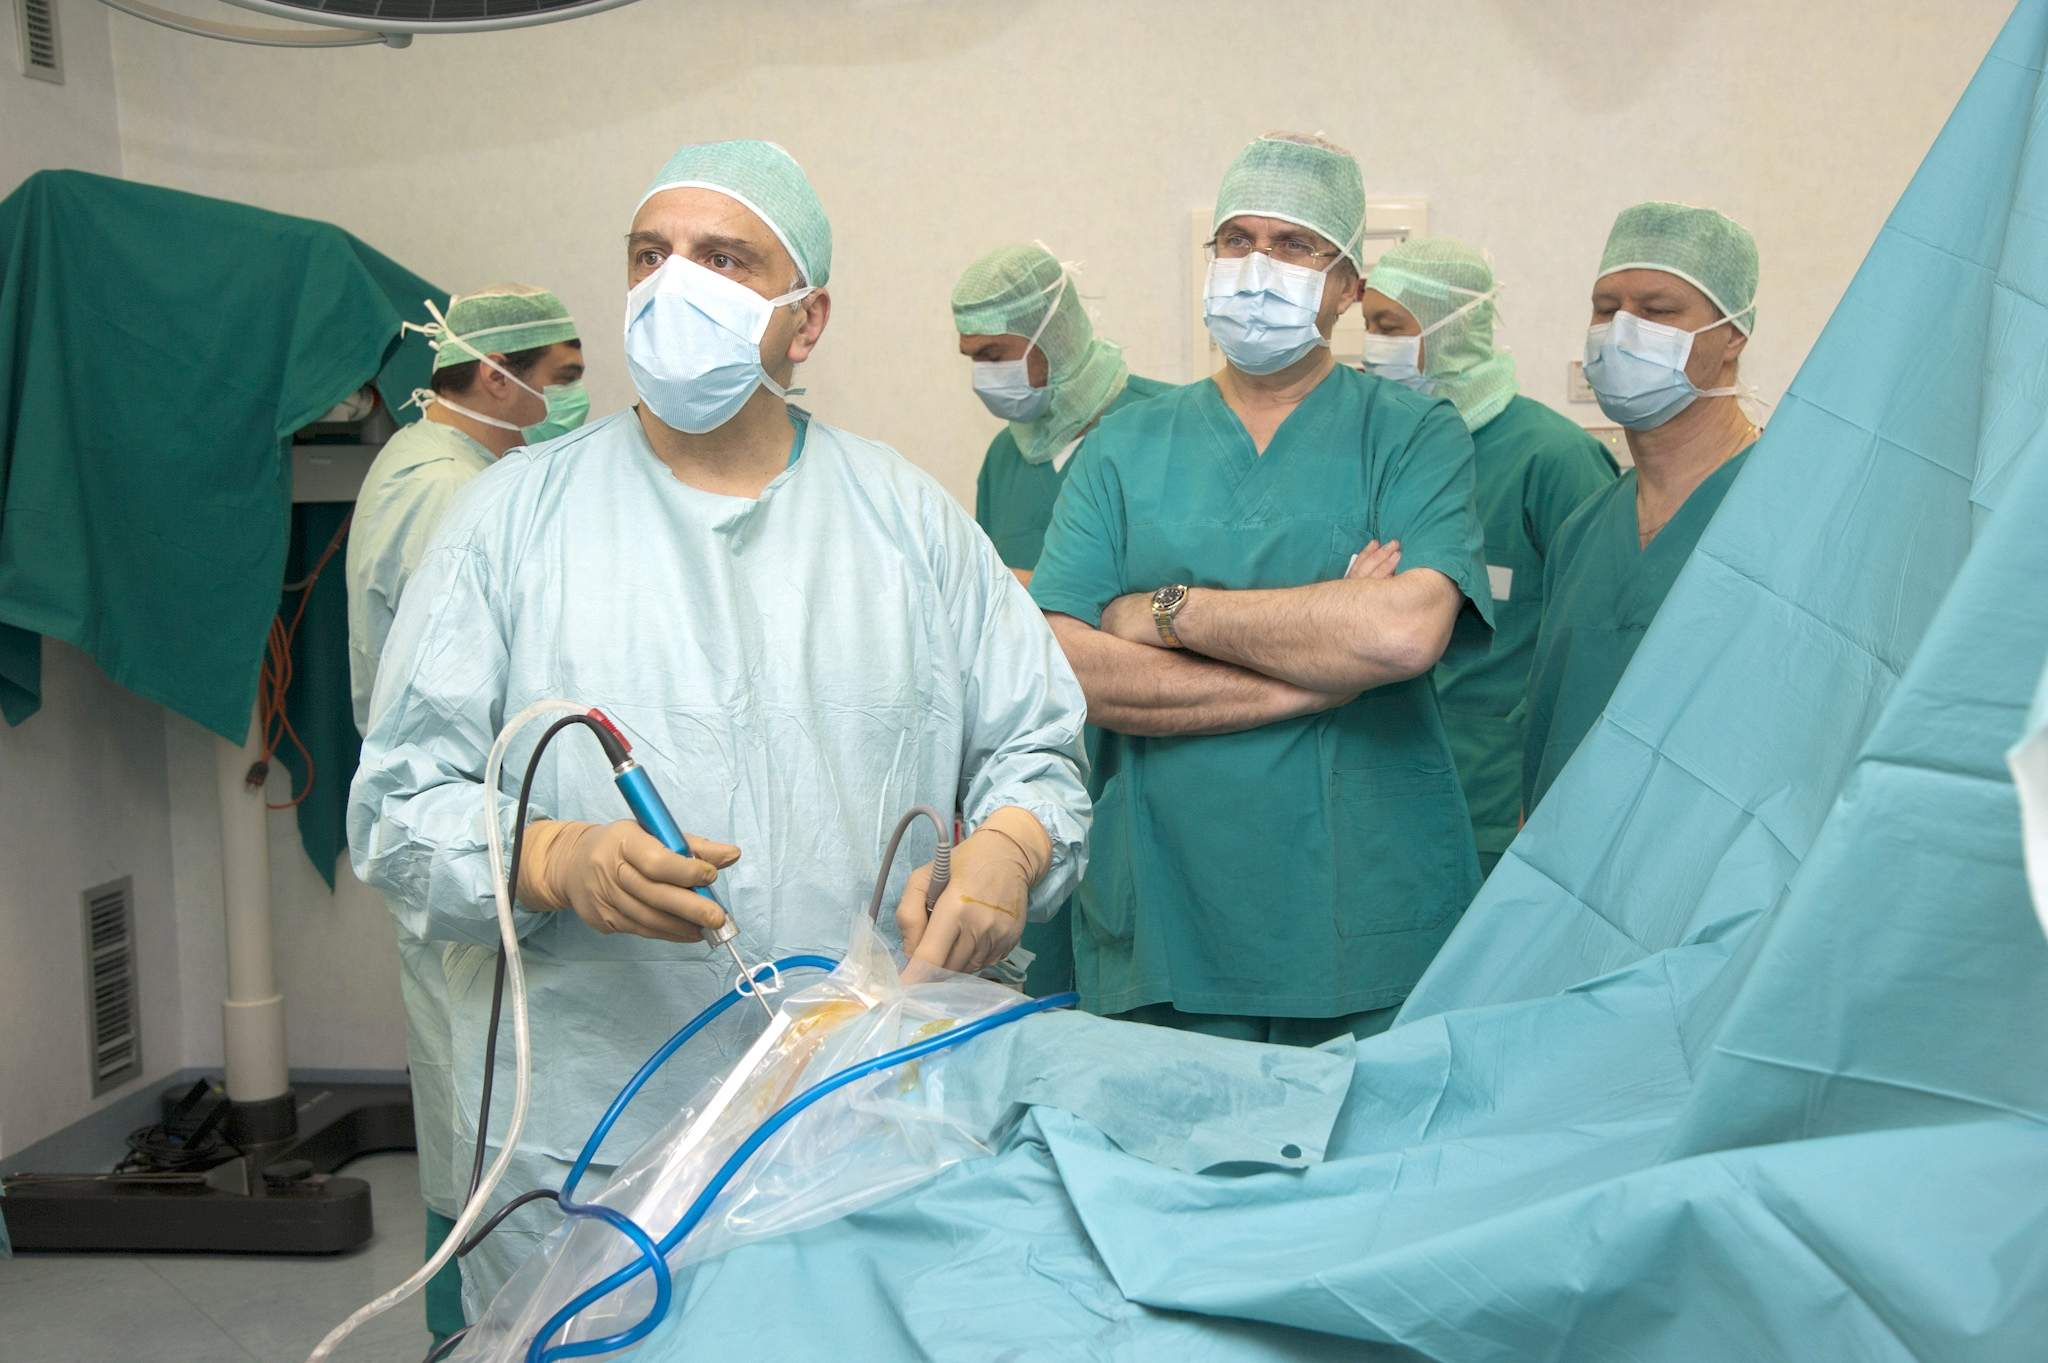 Infermi di Biella: ortopedici pionieri nella ricostruzione di cartilagini articolari con biotecnologie